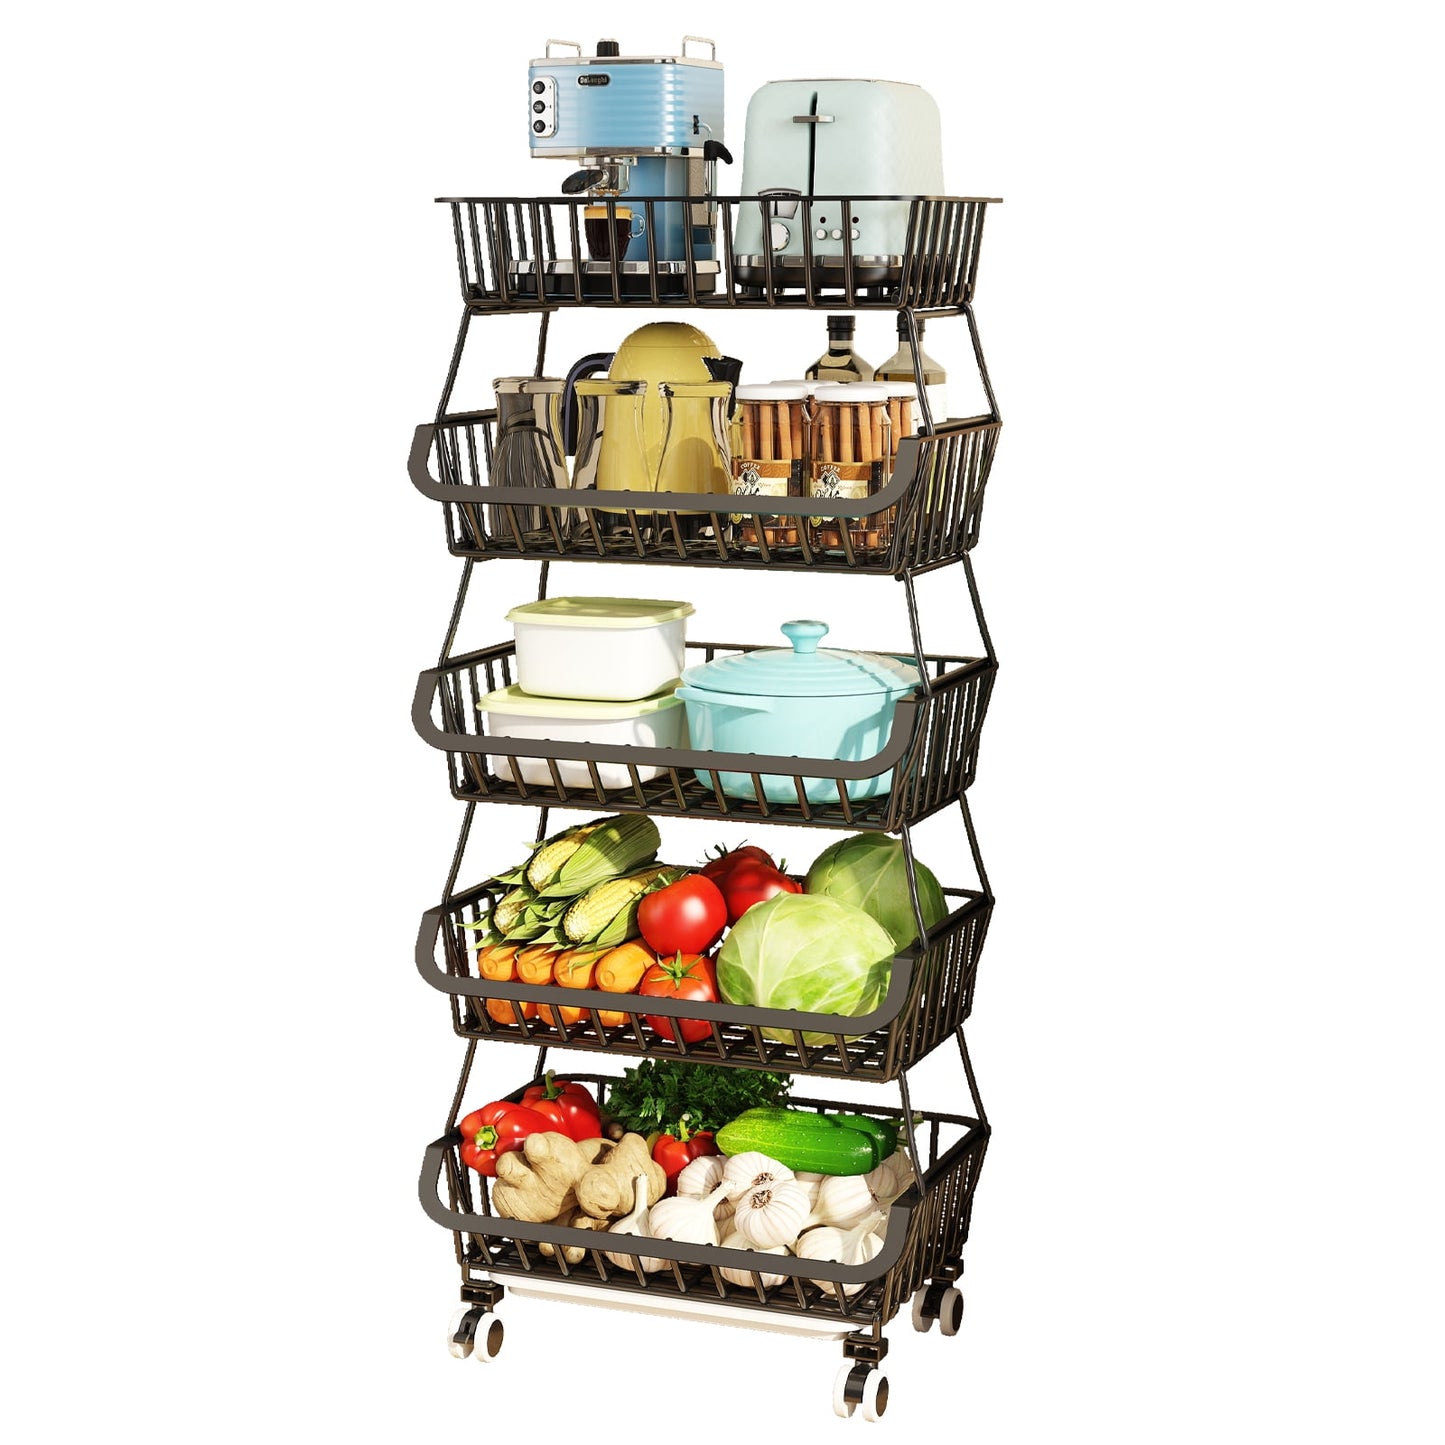 Wisdom Star 5 Tier Kitchen Wire Storage Basket Utility Cart with Wheels, kitchen and storage cart,44.1*11.4*16.1in, Black